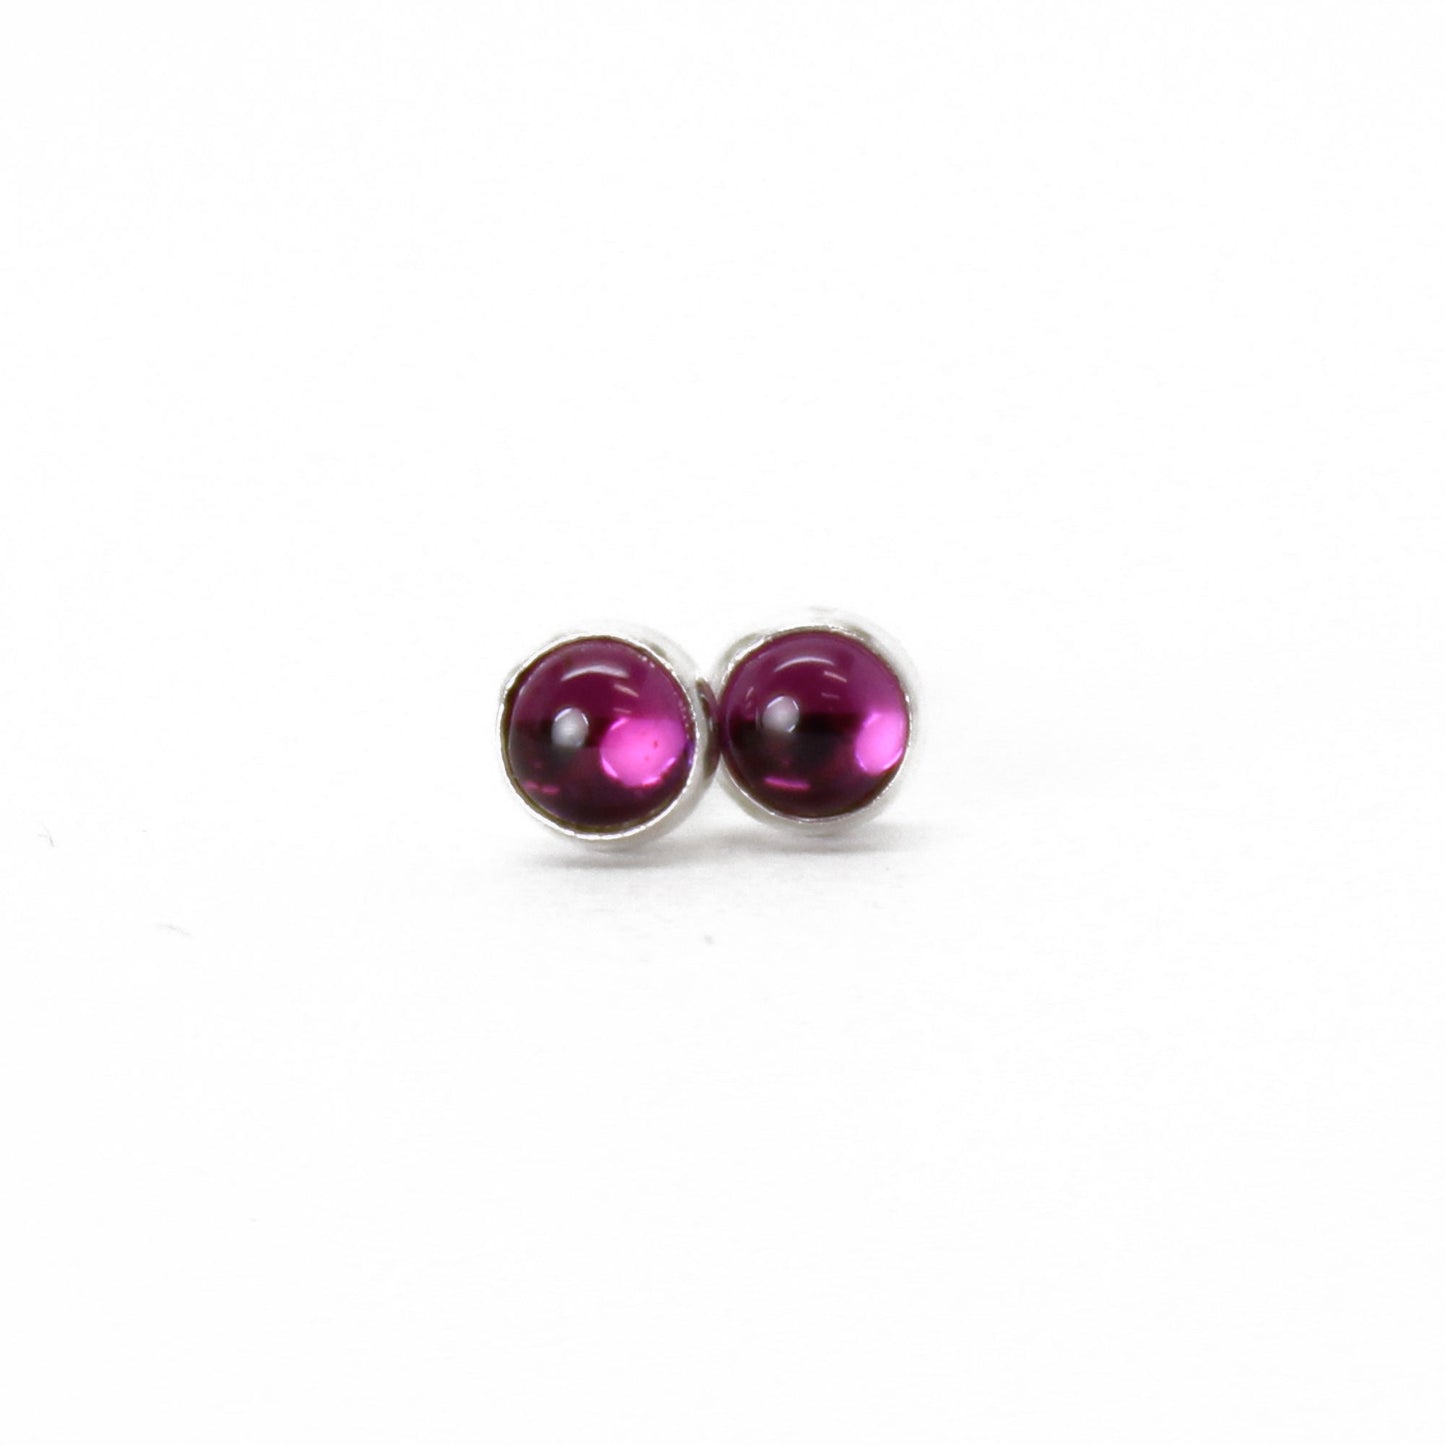 Rhodolite Garnet Stud Earrings, 3mm Pink Studs in Sterling Silver